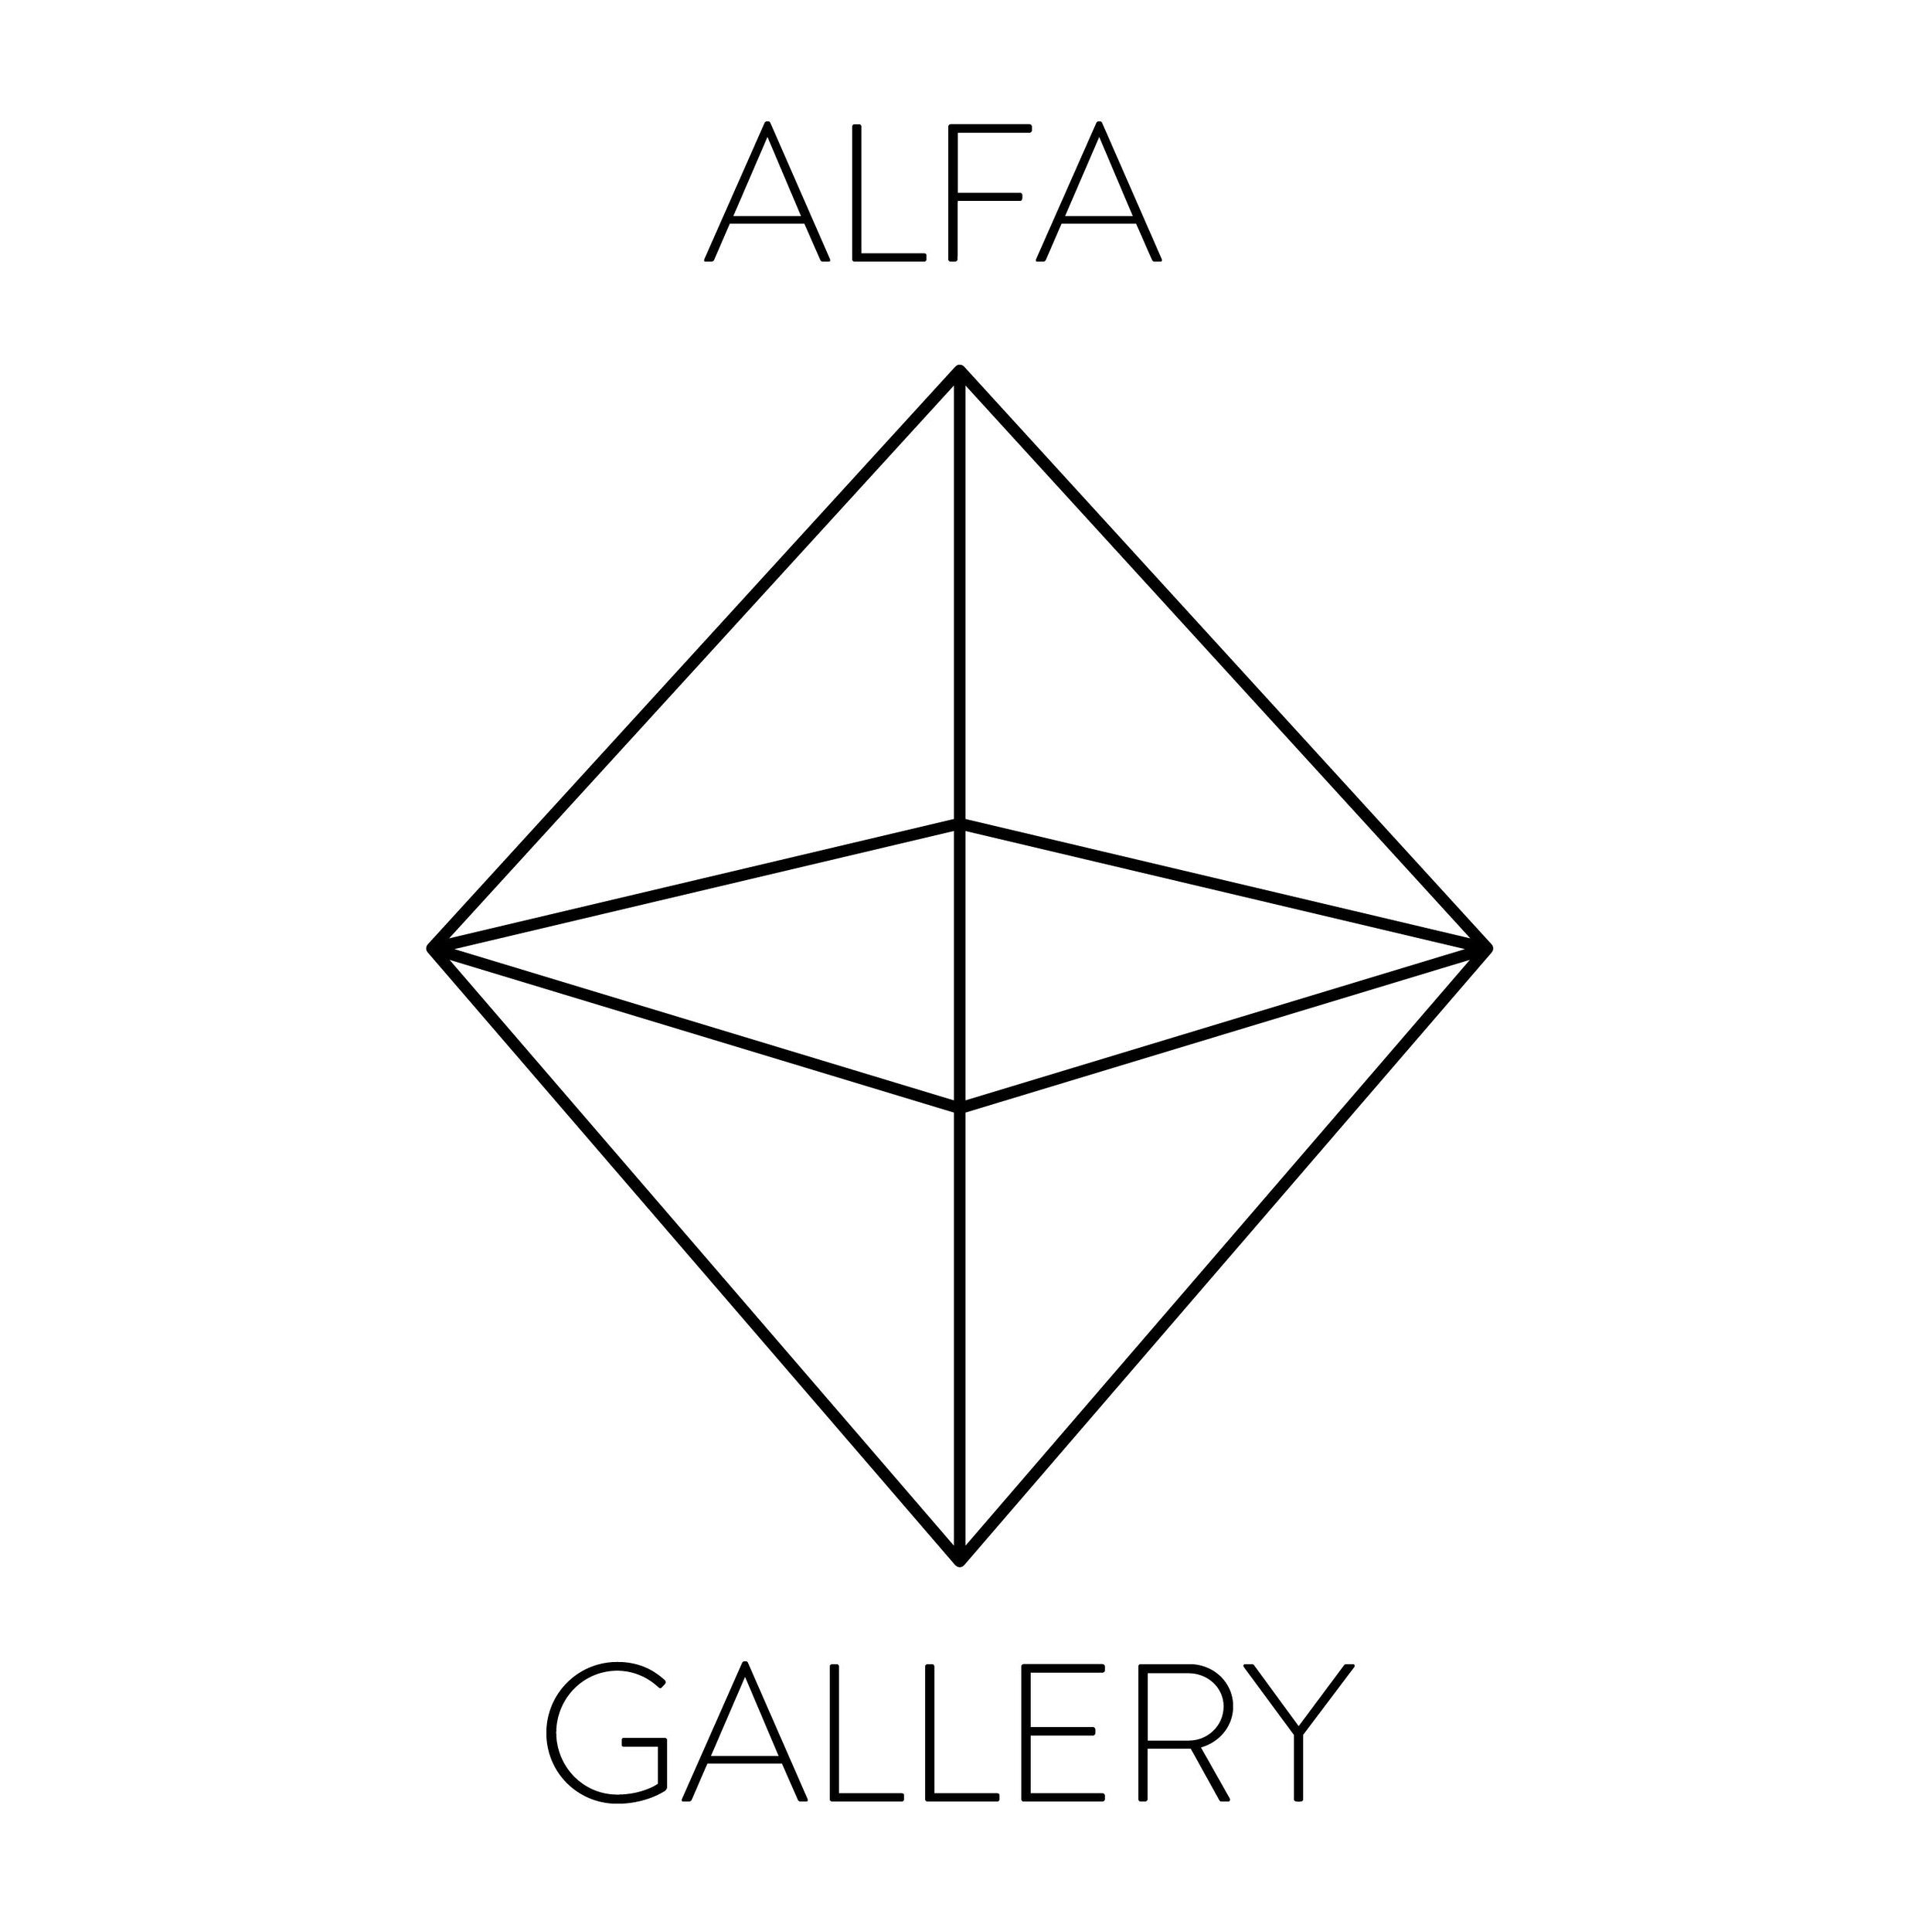 Alpha треугольник. Альфа logo. Альфа звезда логотип. Alpha artist.